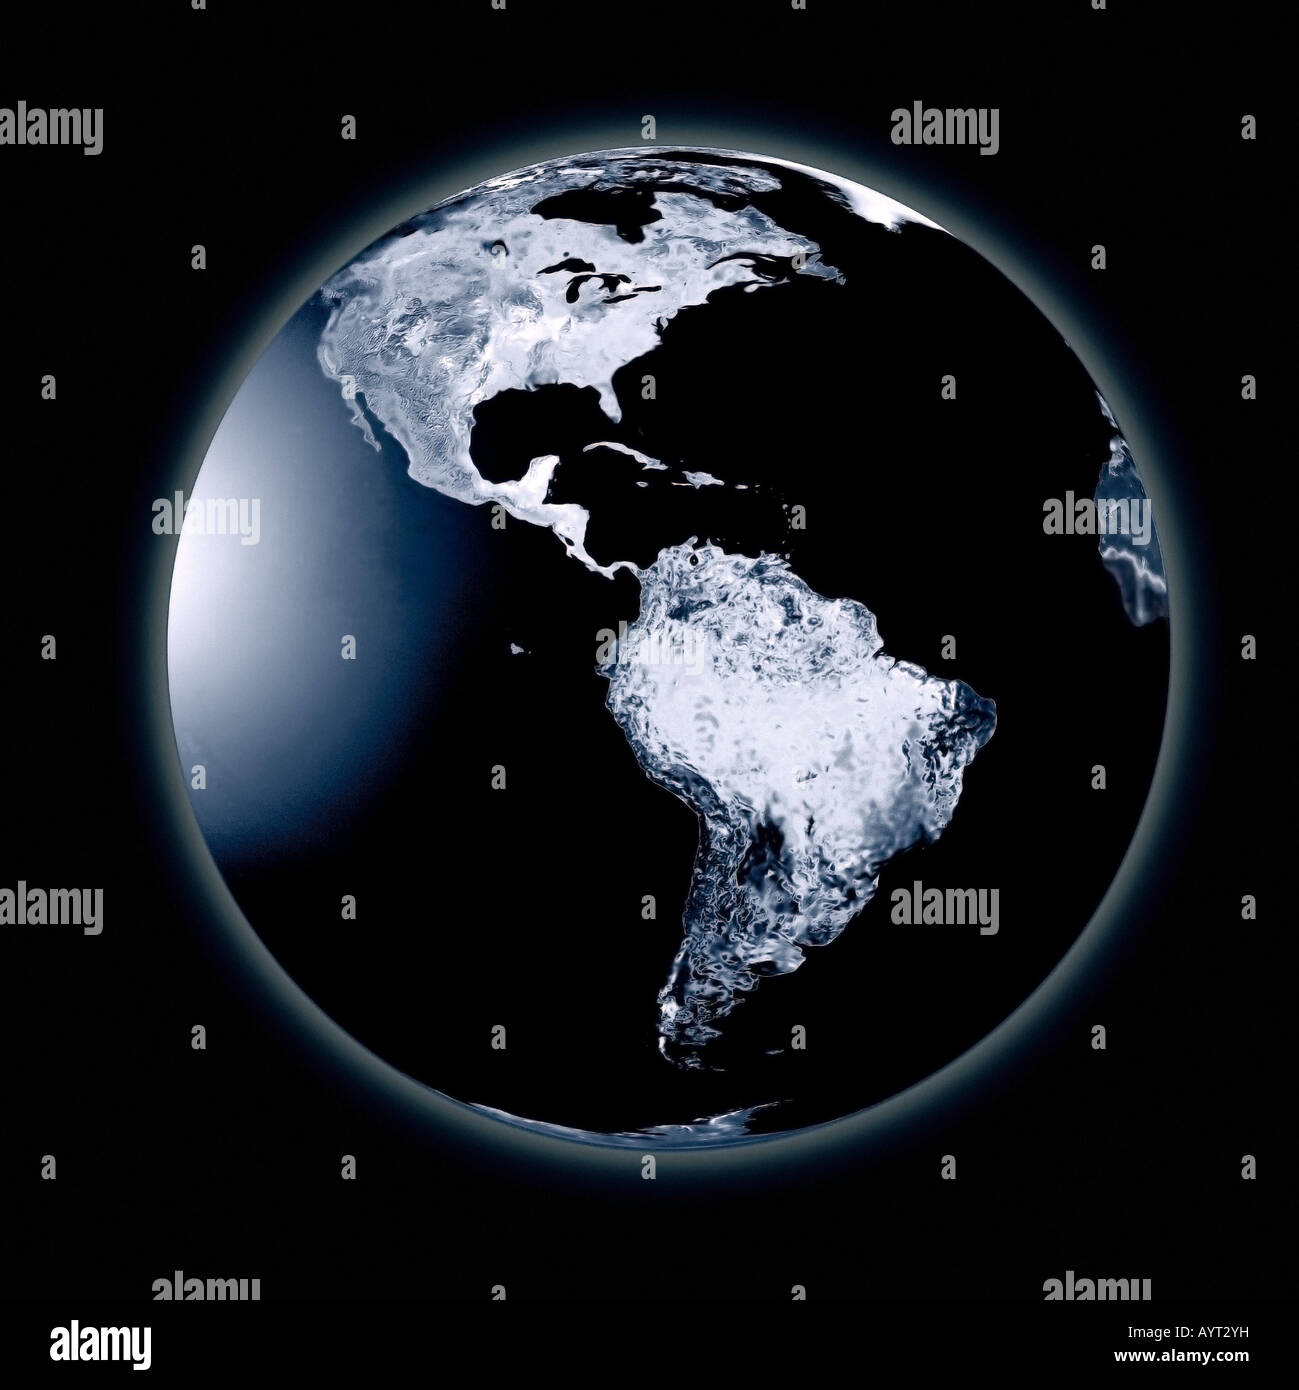 Eine digitale Illustration eines kalten und gefrorenen Planeten Erde. Abbildung Numérique Représentant Une Planète Terre Froide et Gelée. Stockfoto